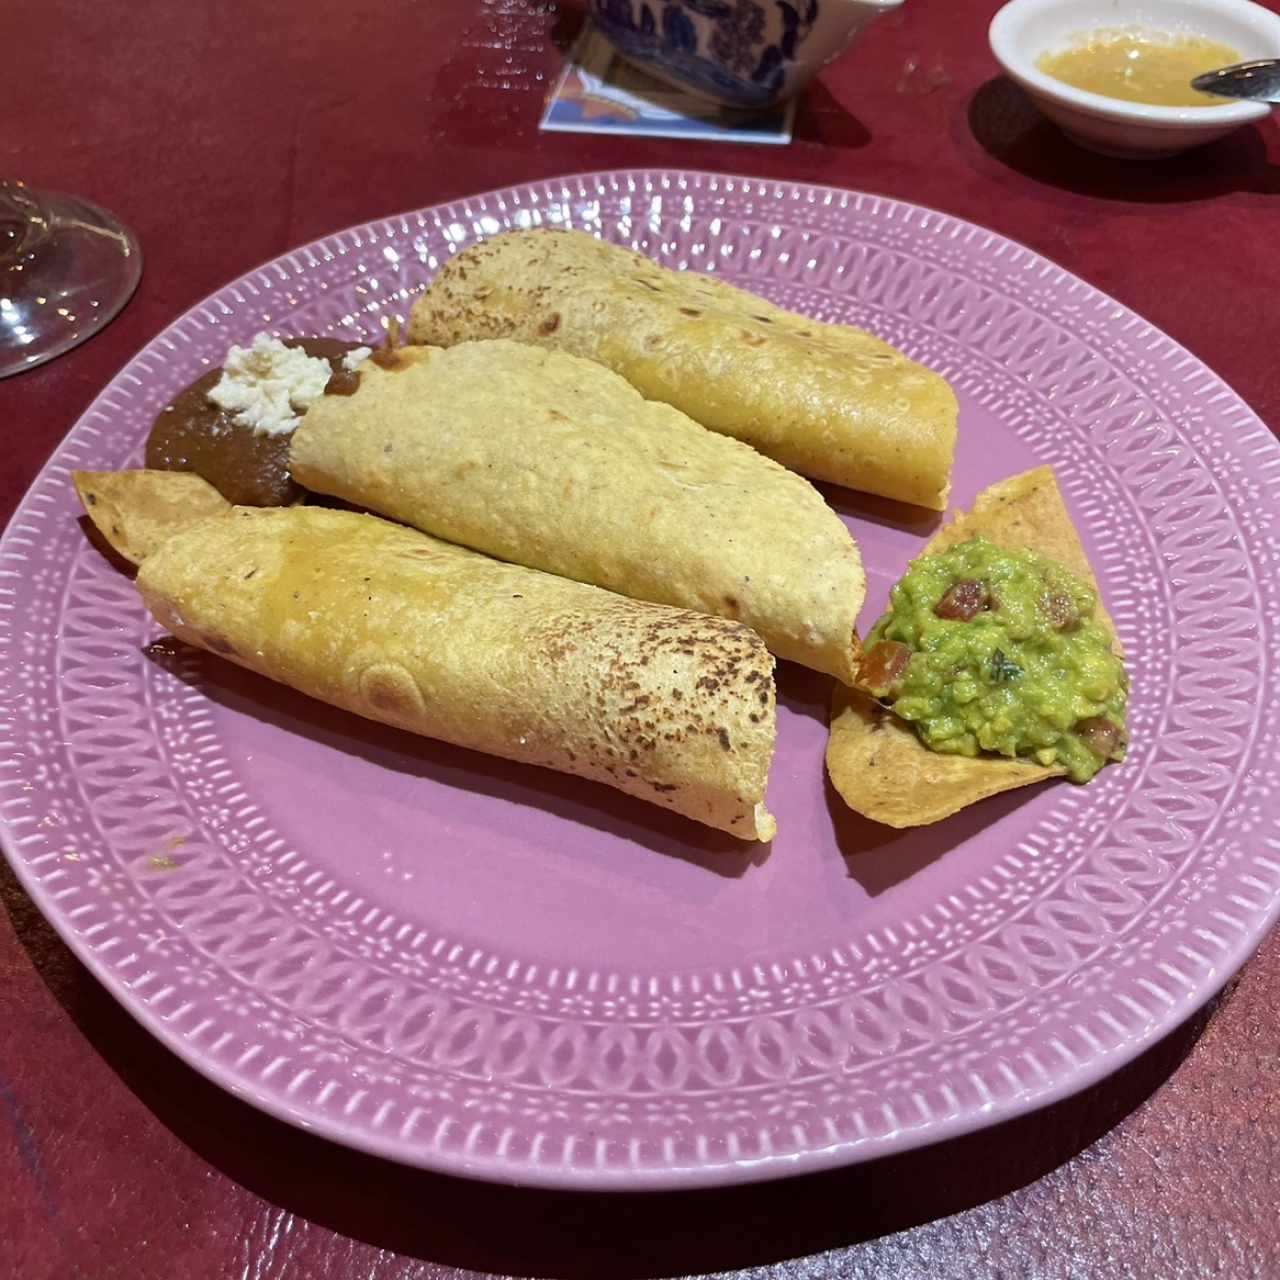 Tacos suaves mixtos en tortillas de maiz 😊